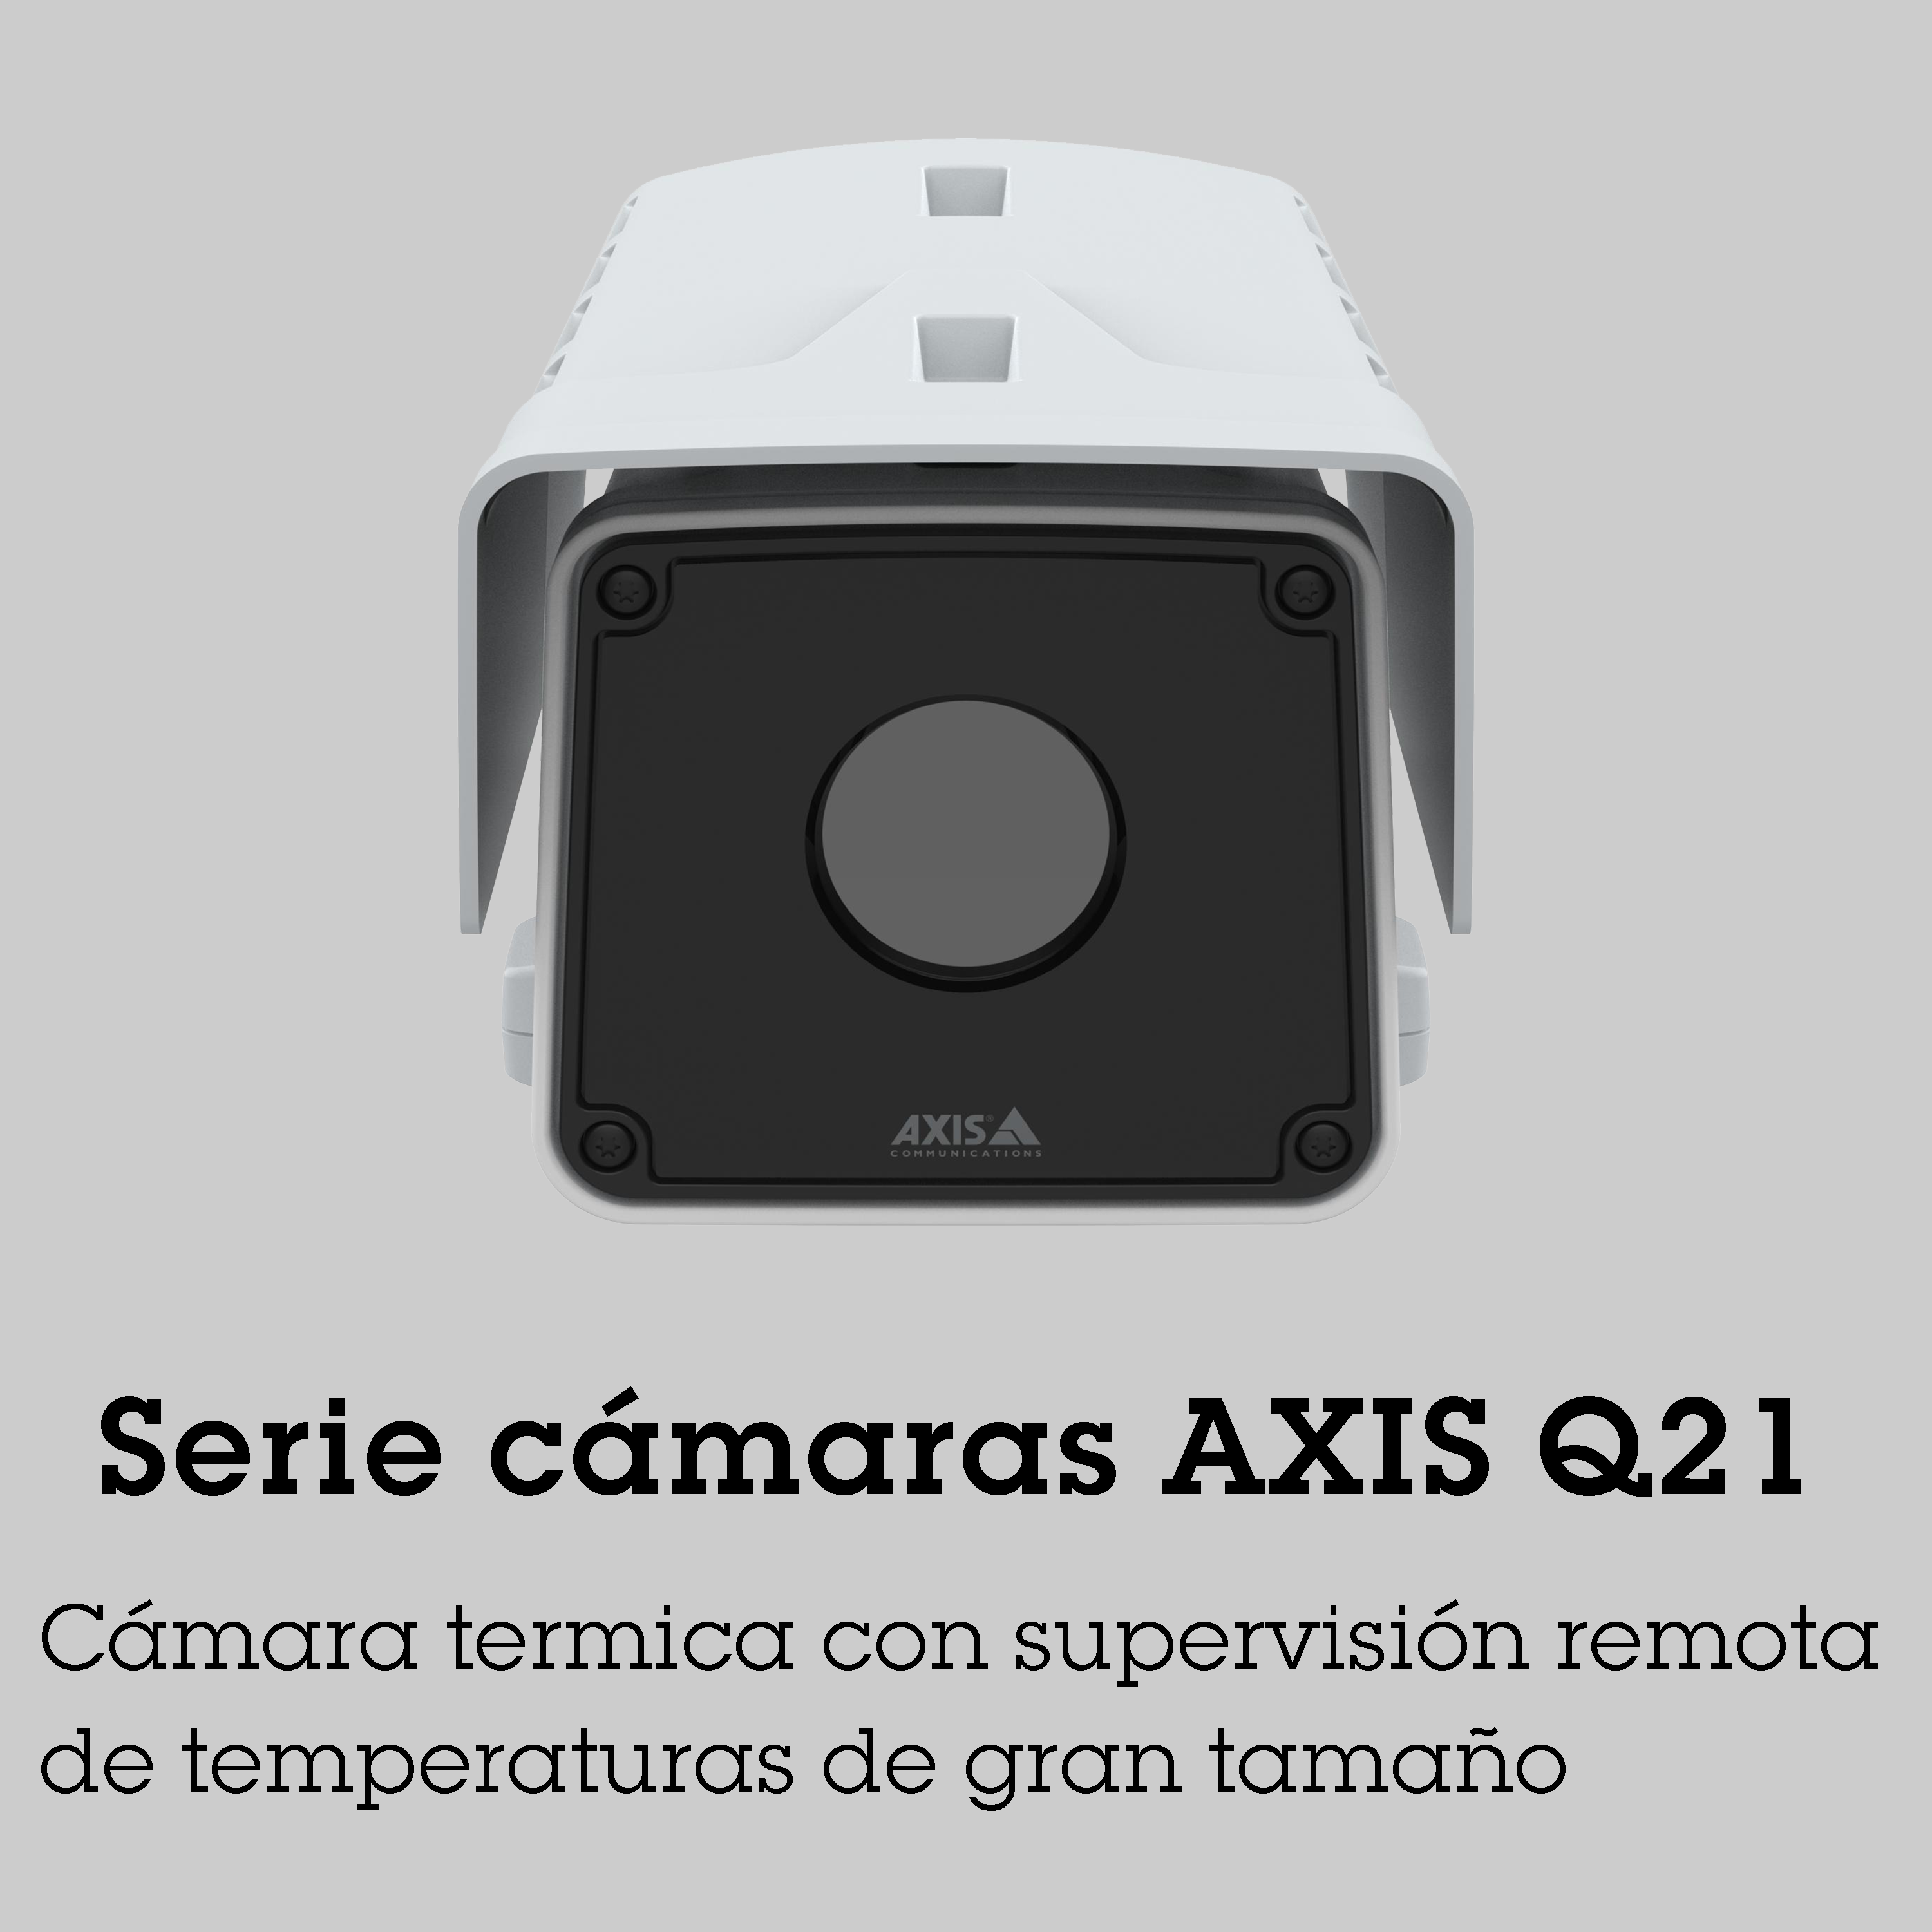 Serie cámaras AXIS Q21